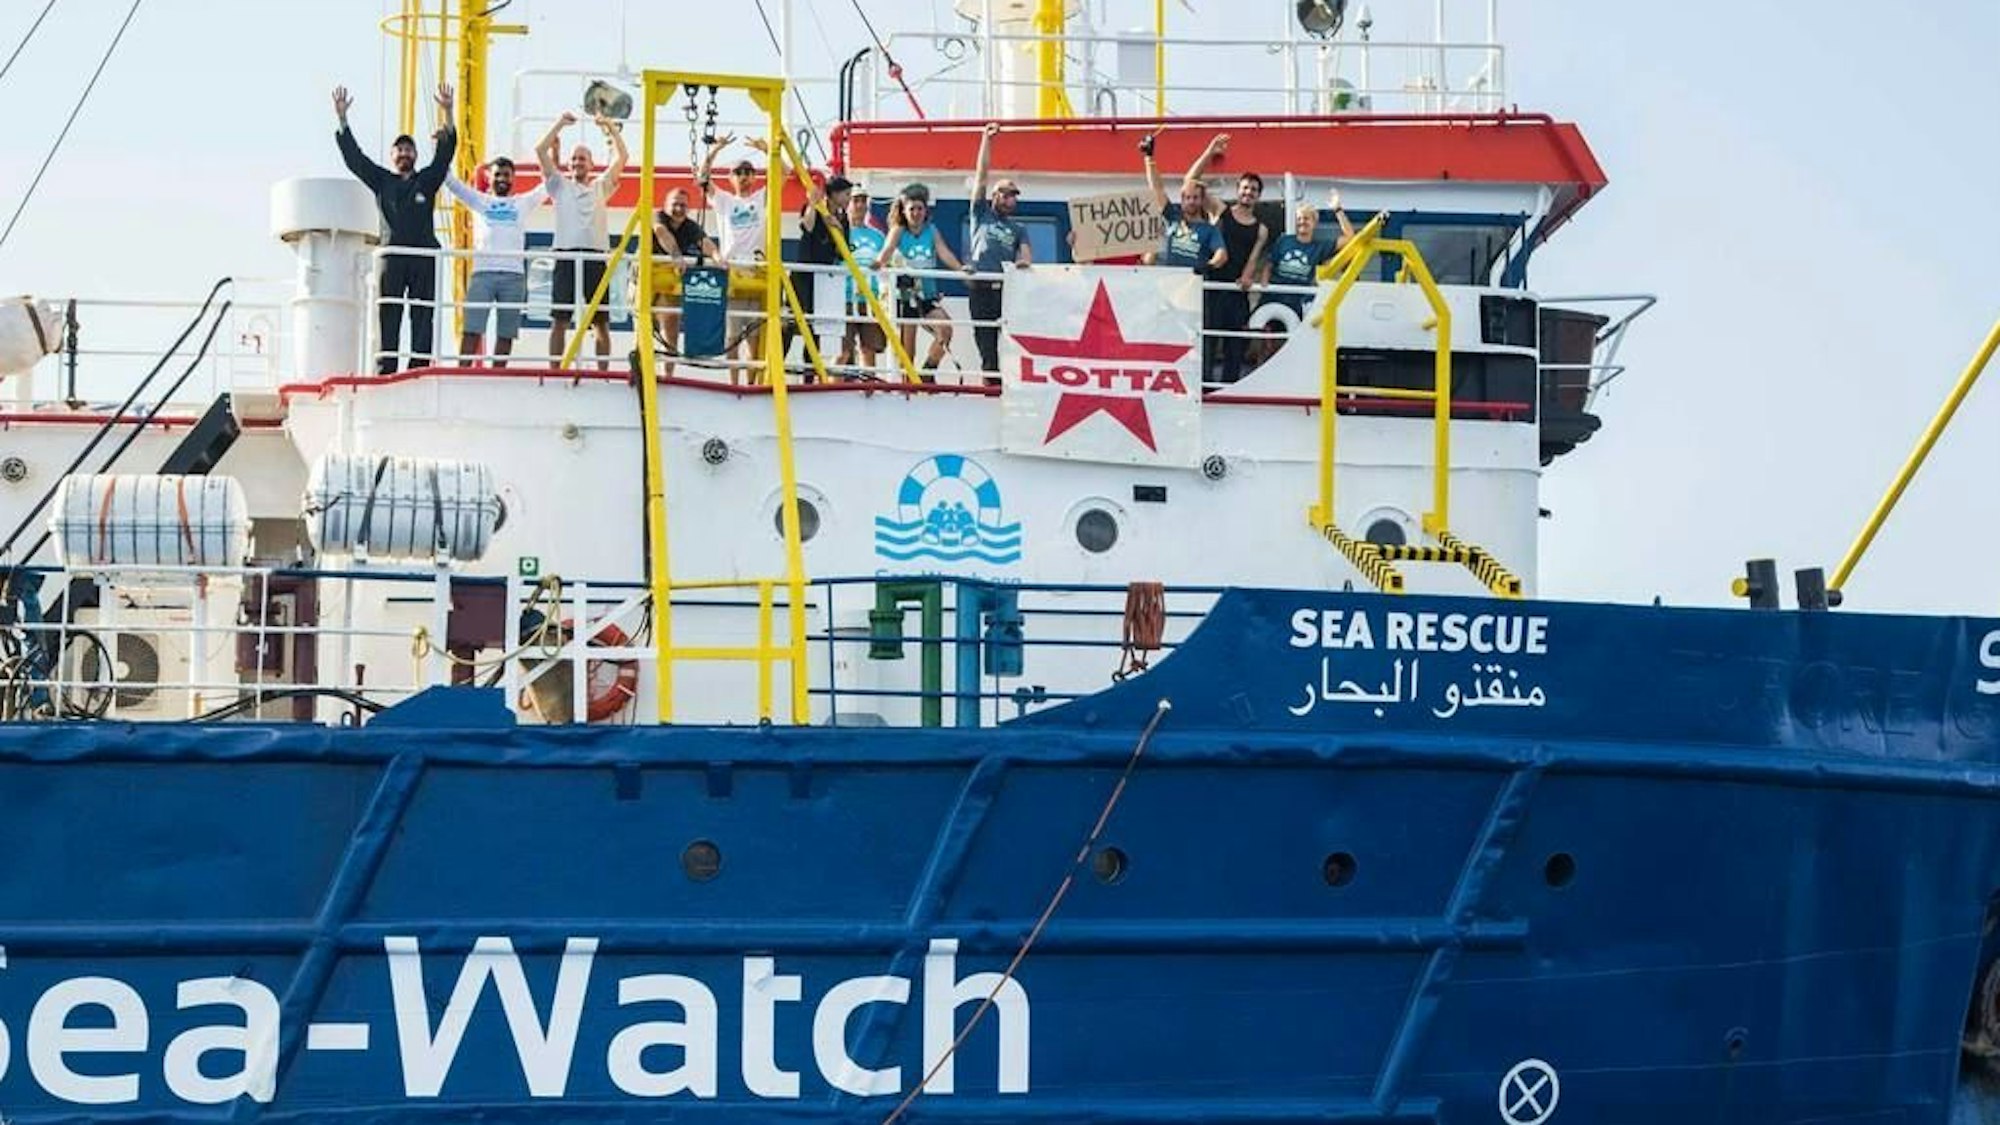 Sea-Watch Crew Mitglieder auf dem grüßen mit dem Lotta Plakat vom Boot.